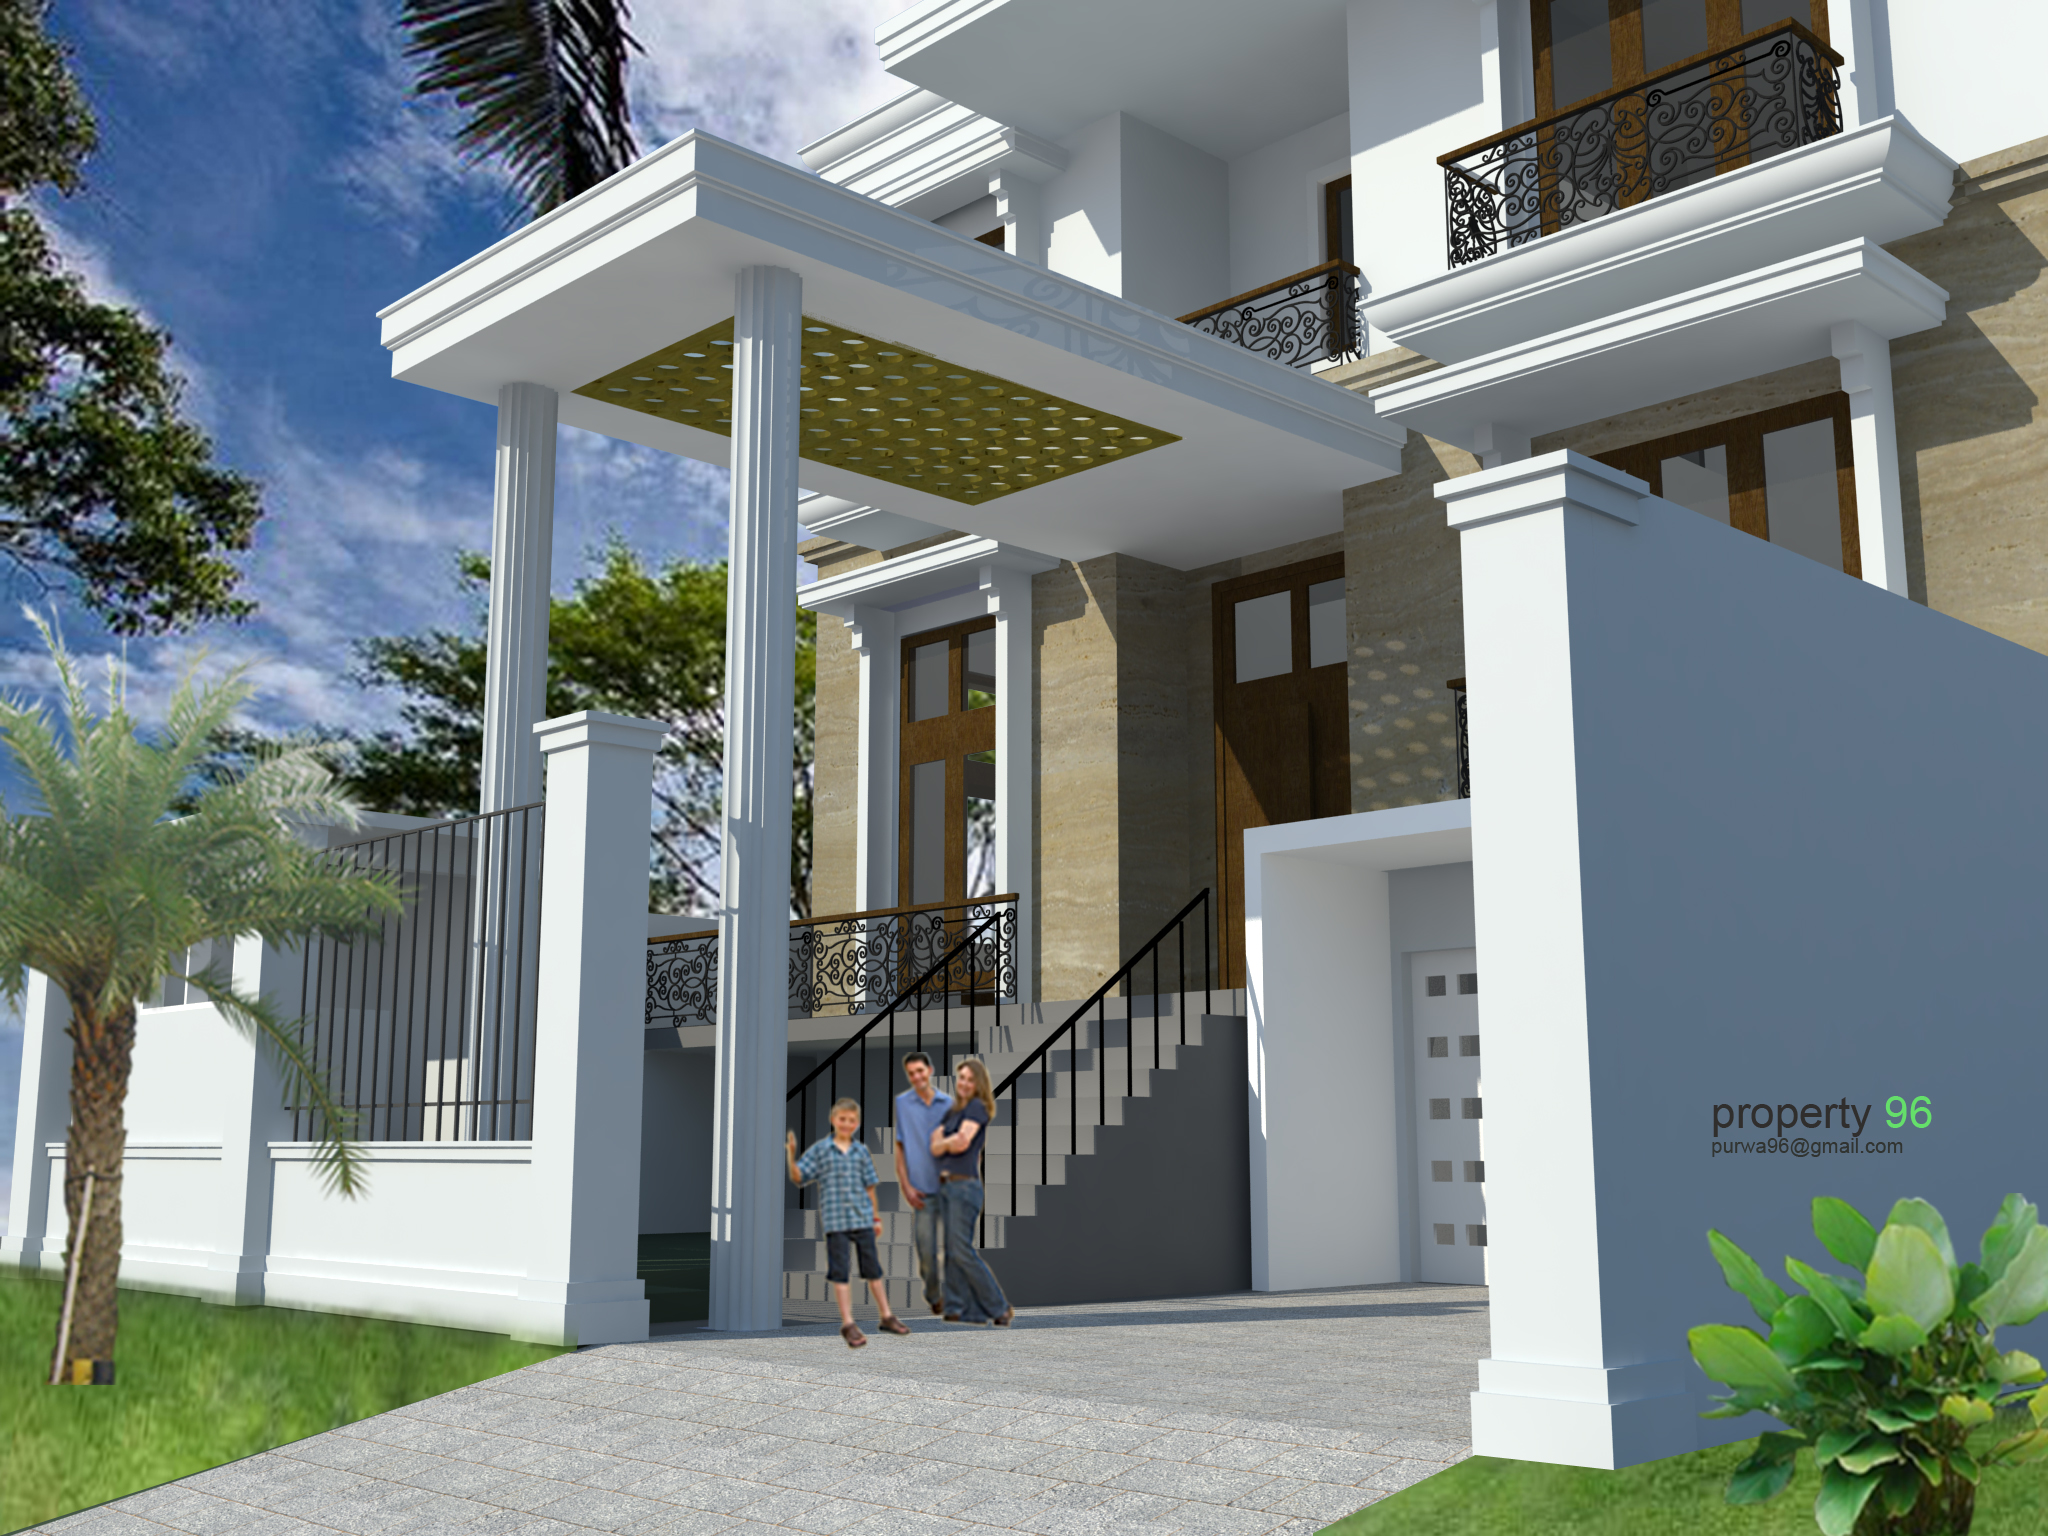 desain rumah  2019 Rumah  Minimalis Clasic Images